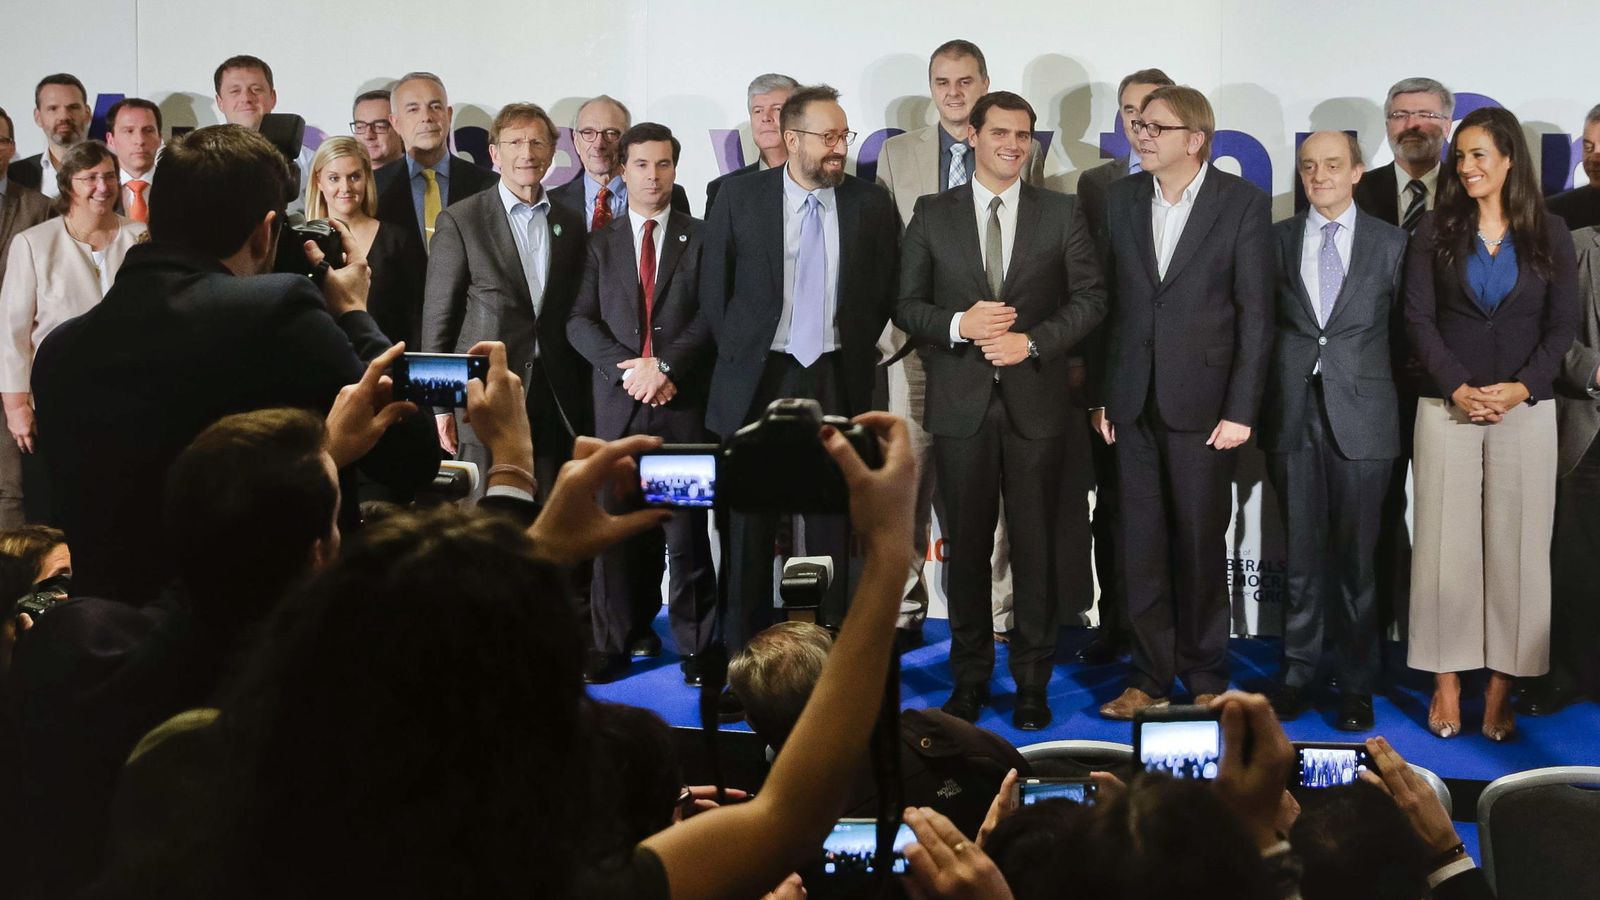 Foto: El presidente de Ciudadanos, Albert Rivera (4d), junto al presidente del grupo ALDE del Parlamenteo Europeo, Gui Verhofstadt (3d), entre otros, posan durante el encuentro de líderes liberales y demócratas europeos (Efe)